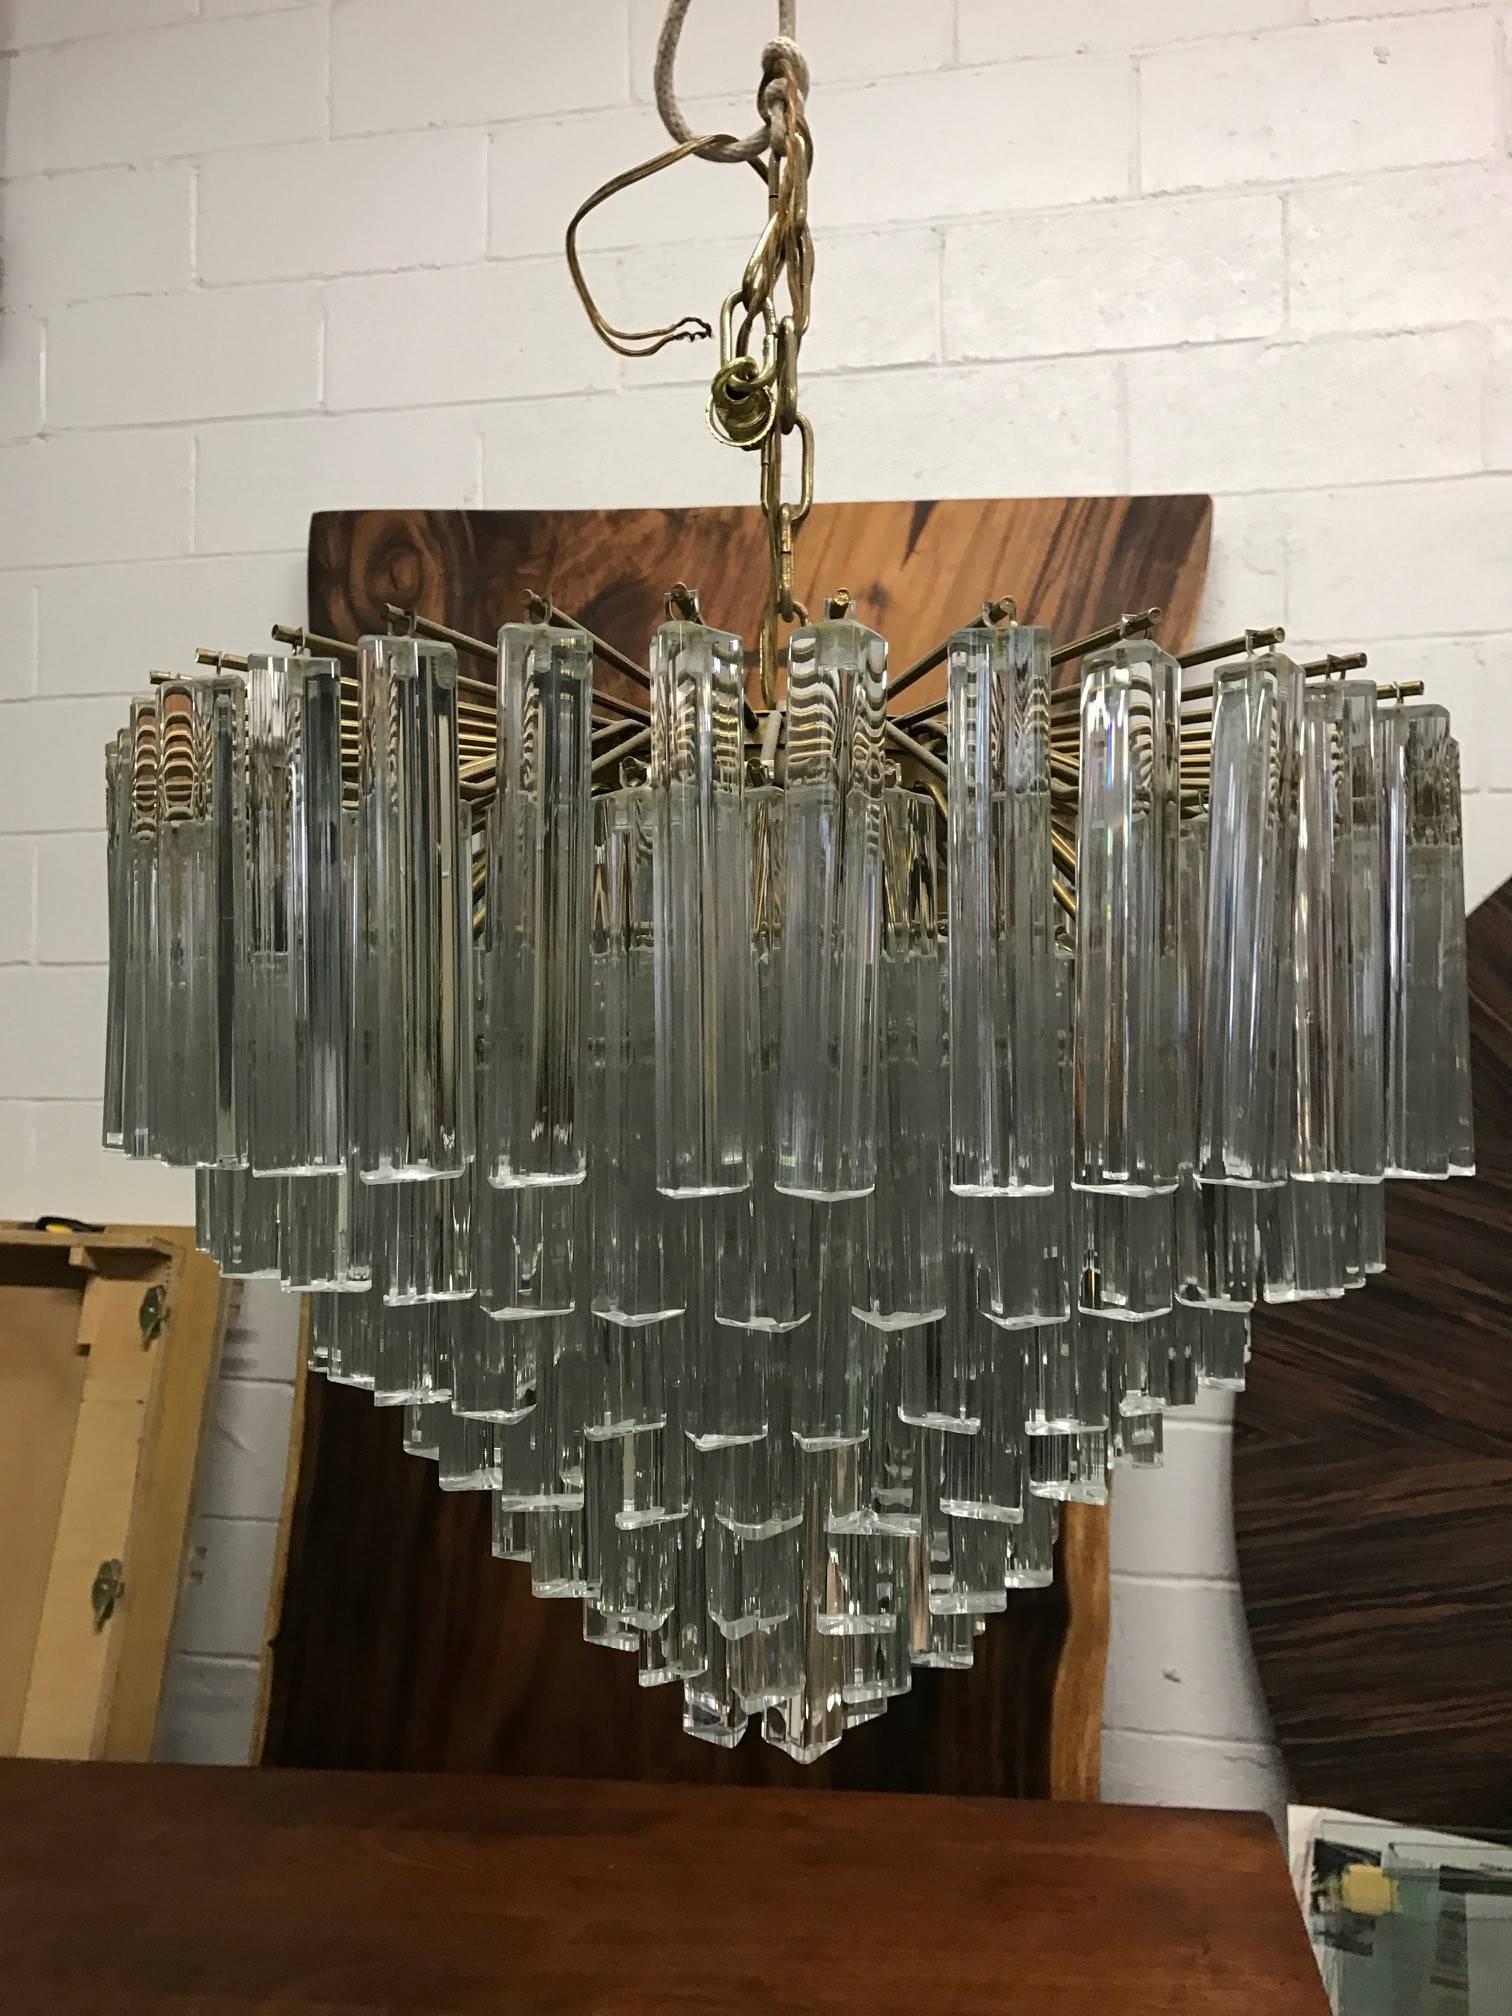 Seven-tier Murano Camer link chandelier.
Measures: 22